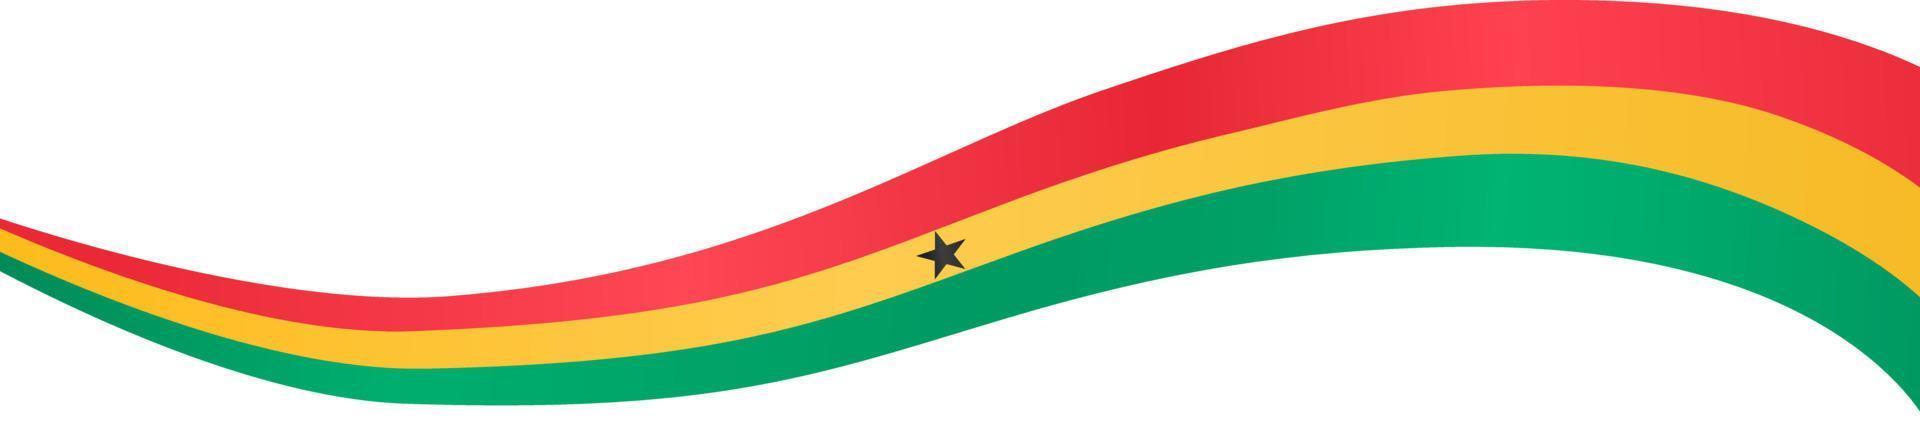 onda bandiera ghana isolata su png o sfondo trasparente, simbolo ghana. illustrazione vettoriale